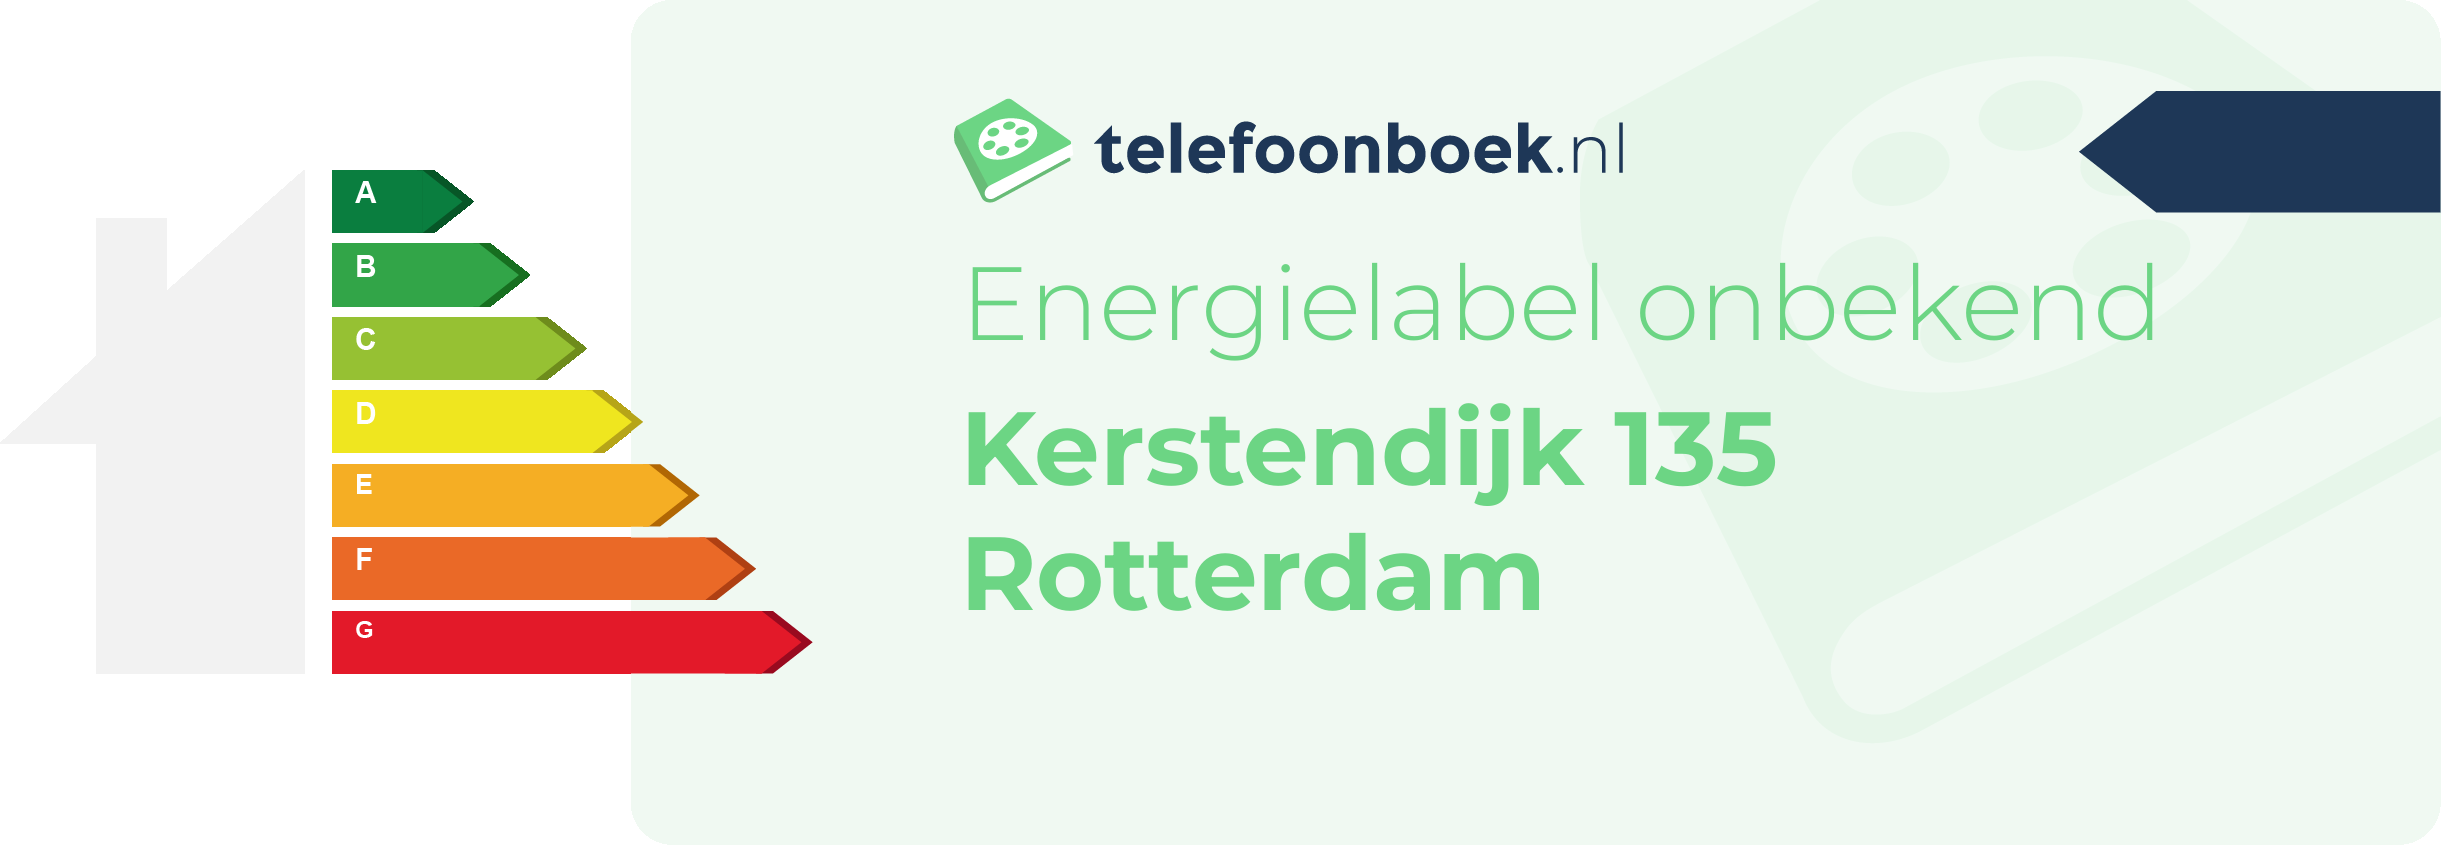 Energielabel Kerstendijk 135 Rotterdam